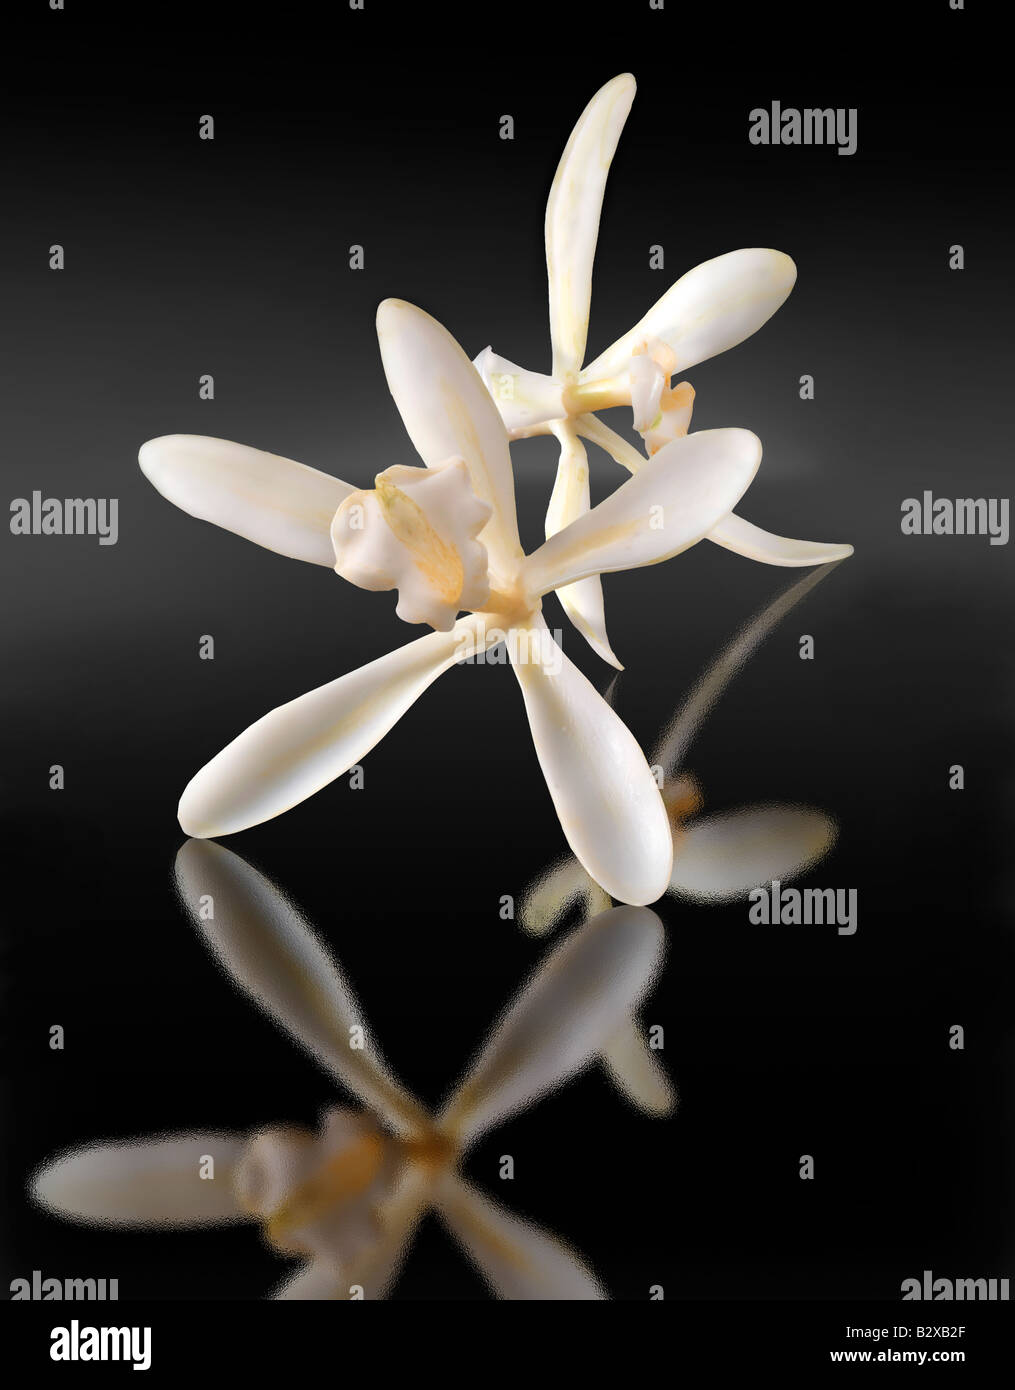 flor de vainilla blanca, planifolia de vainilla, de cerca aislado sobre fondo negro Foto de stock